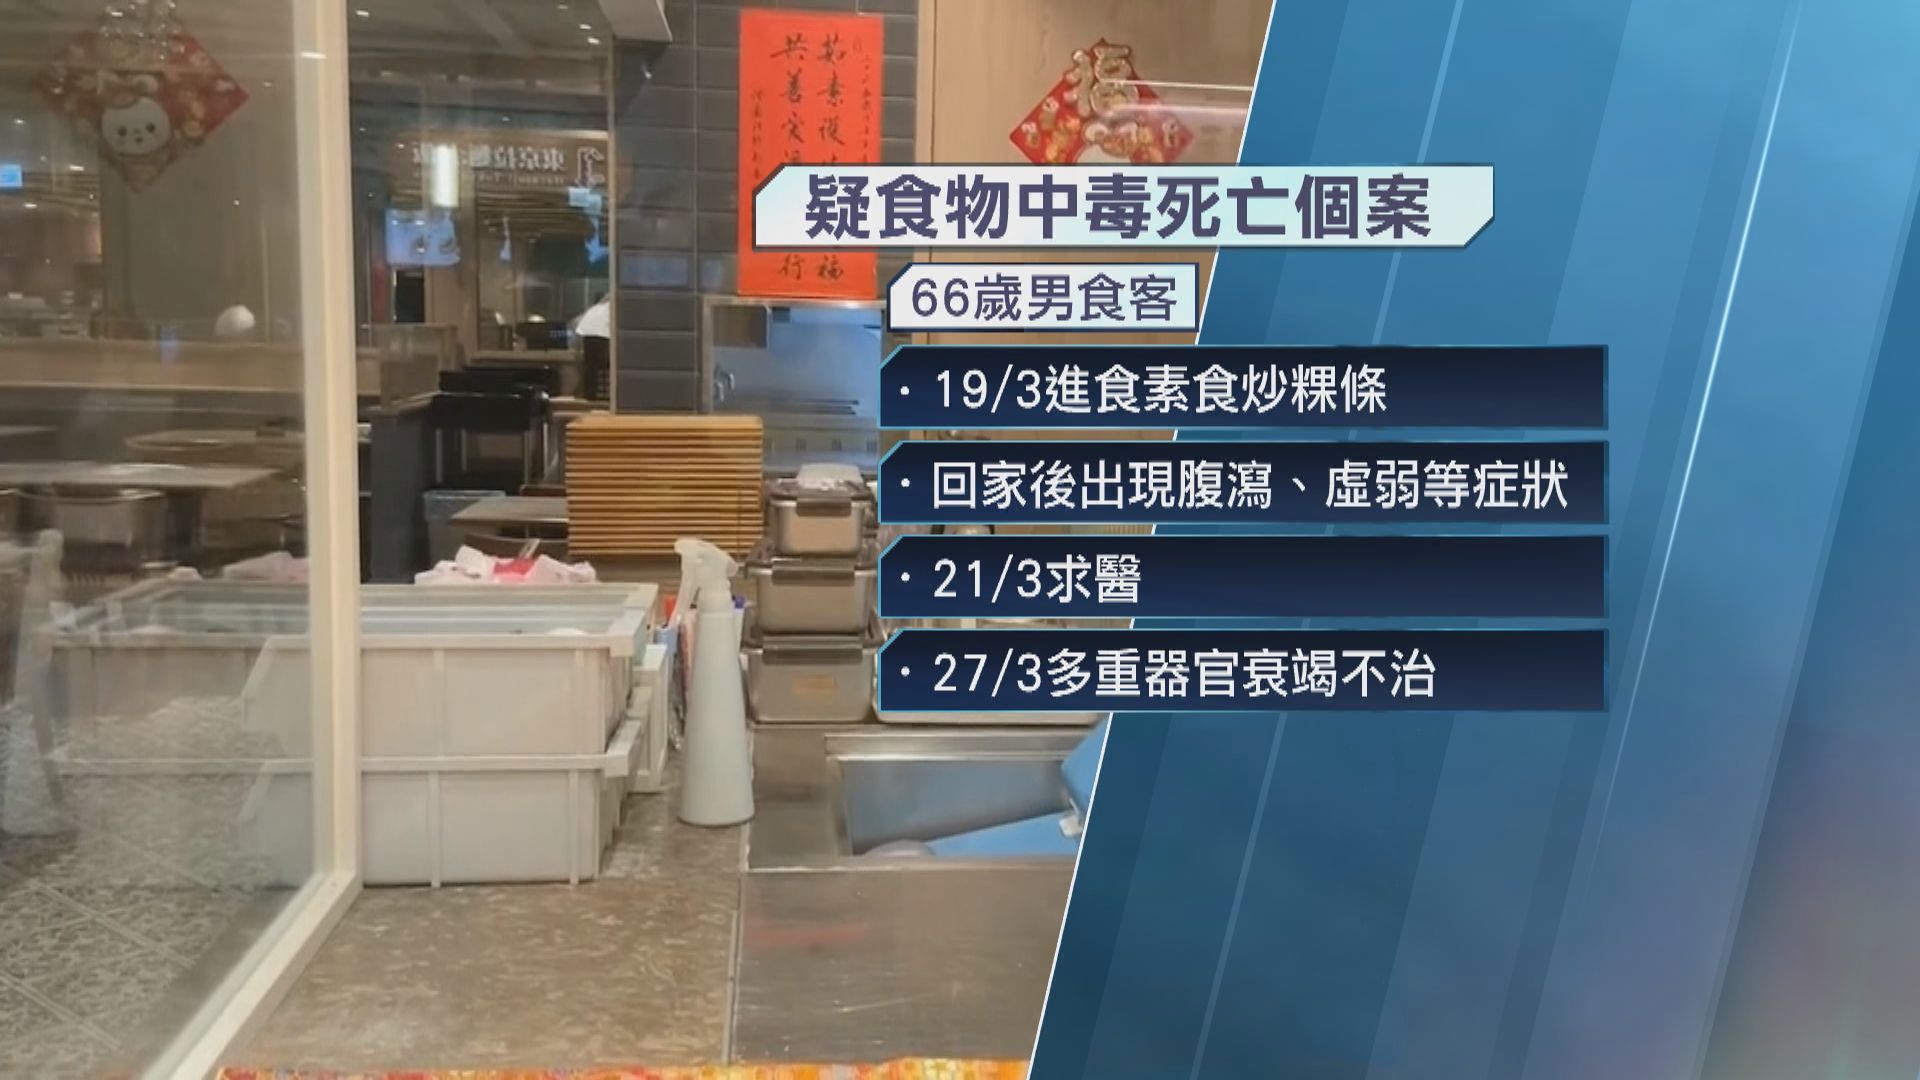 台北一素食餐廳疑爆嚴重食物中毒事件 增至兩死 所有台北分店停業